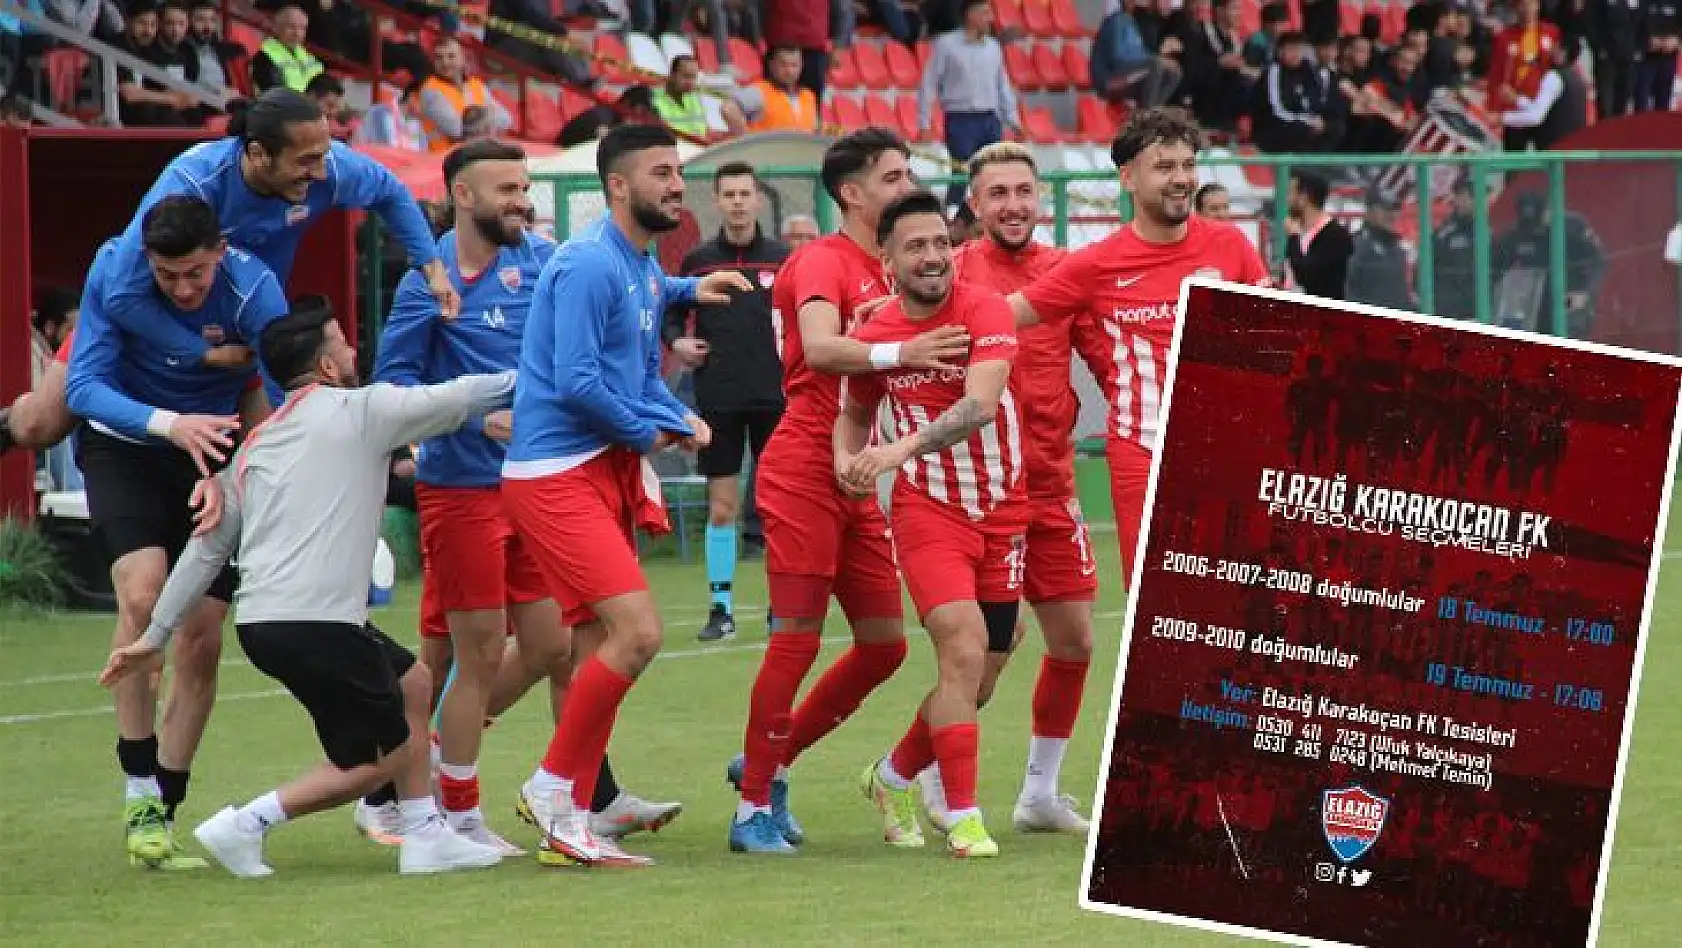 Elazığ Karakoçan FK futbolcu seçmeleri yapacak